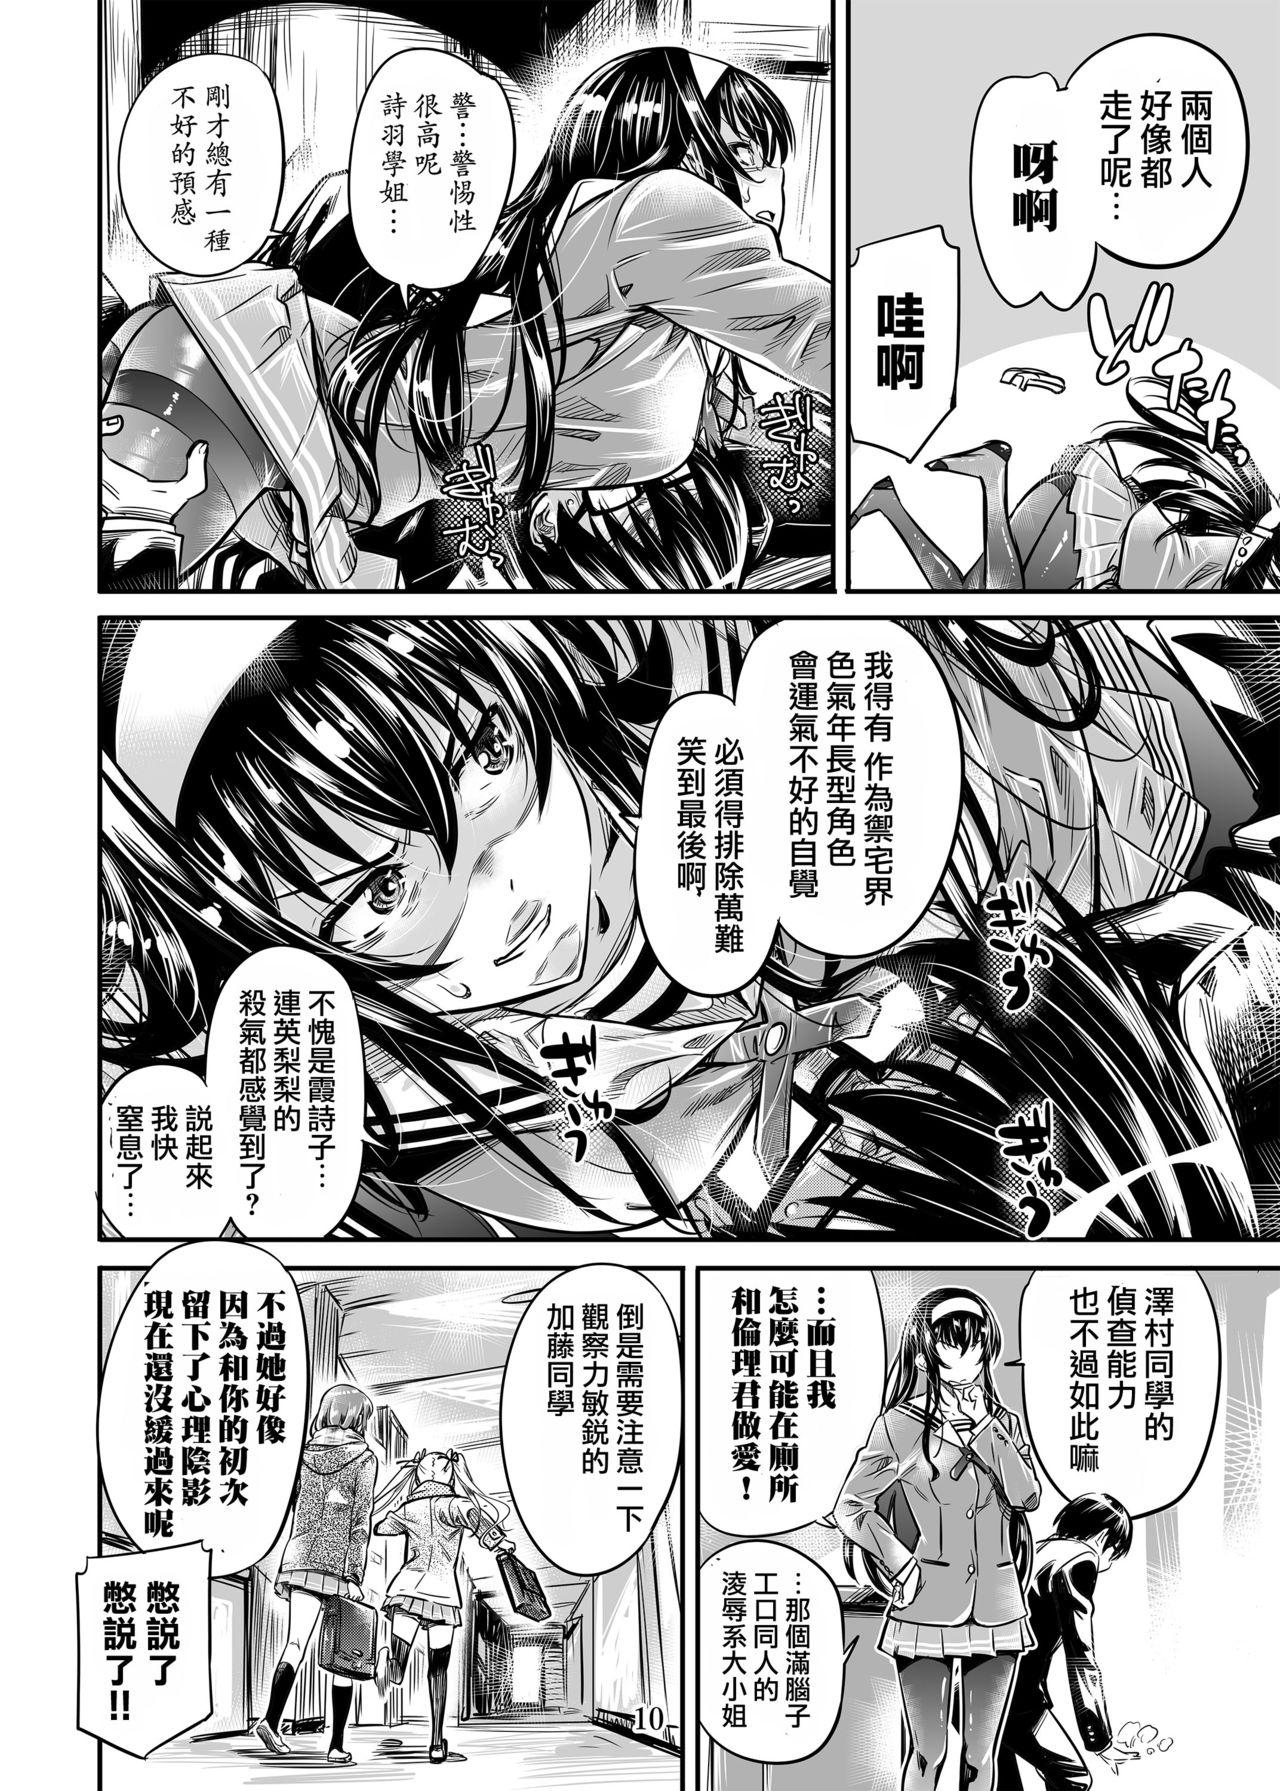 Saenai Heroine Series Vol. 5 Saenai Senpai no Sakarikata 8